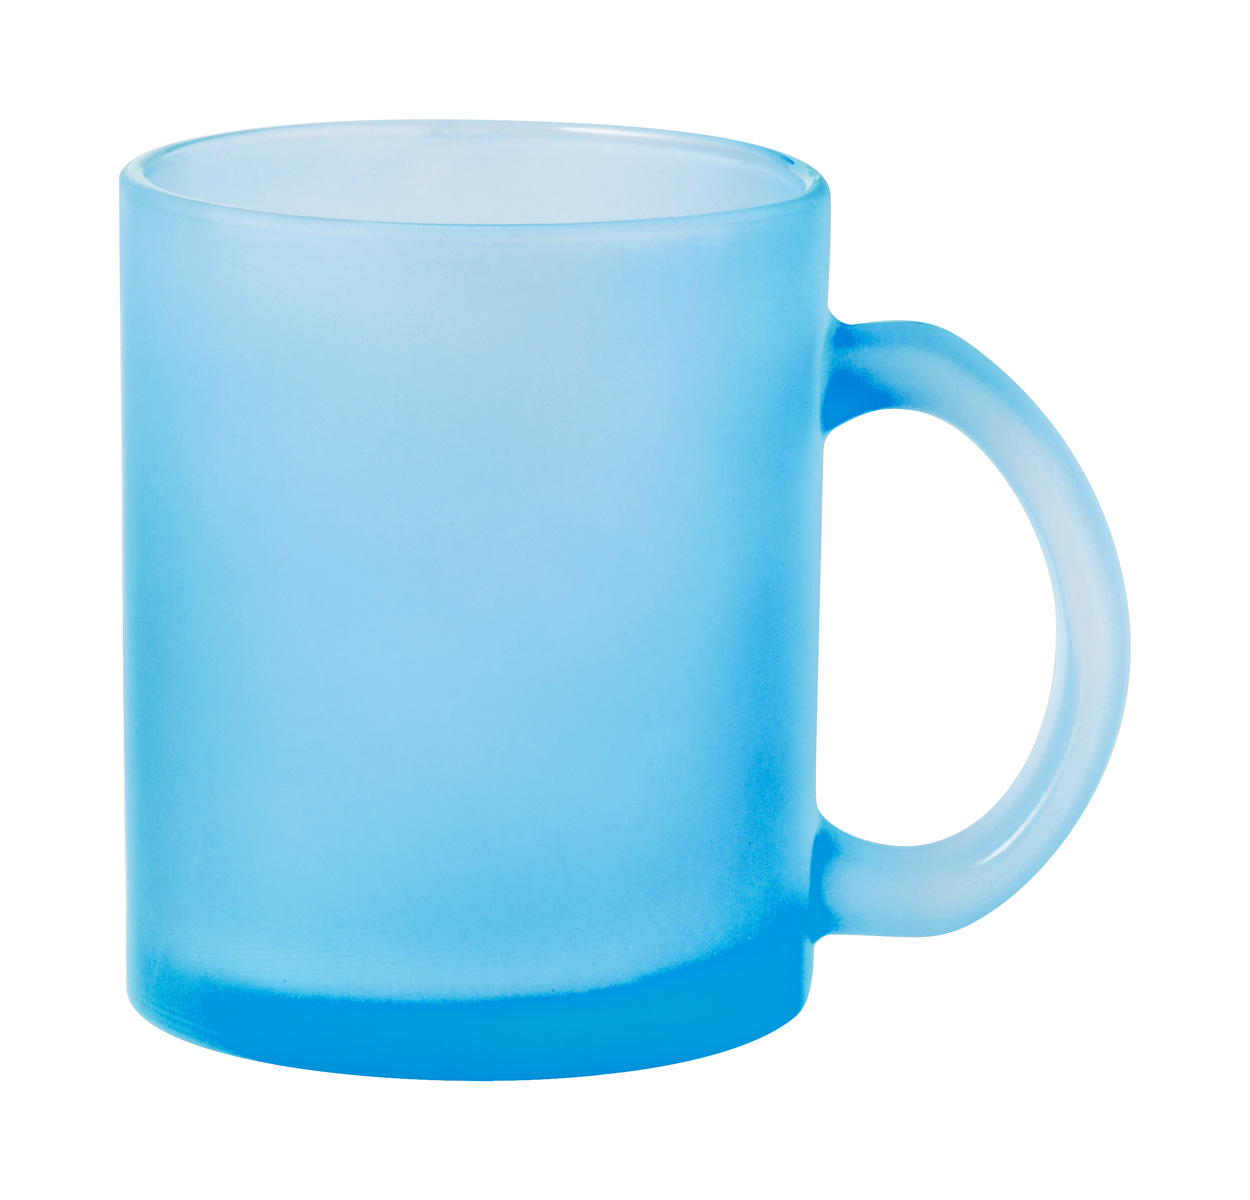 Cervan mug for sublimation - baby blue